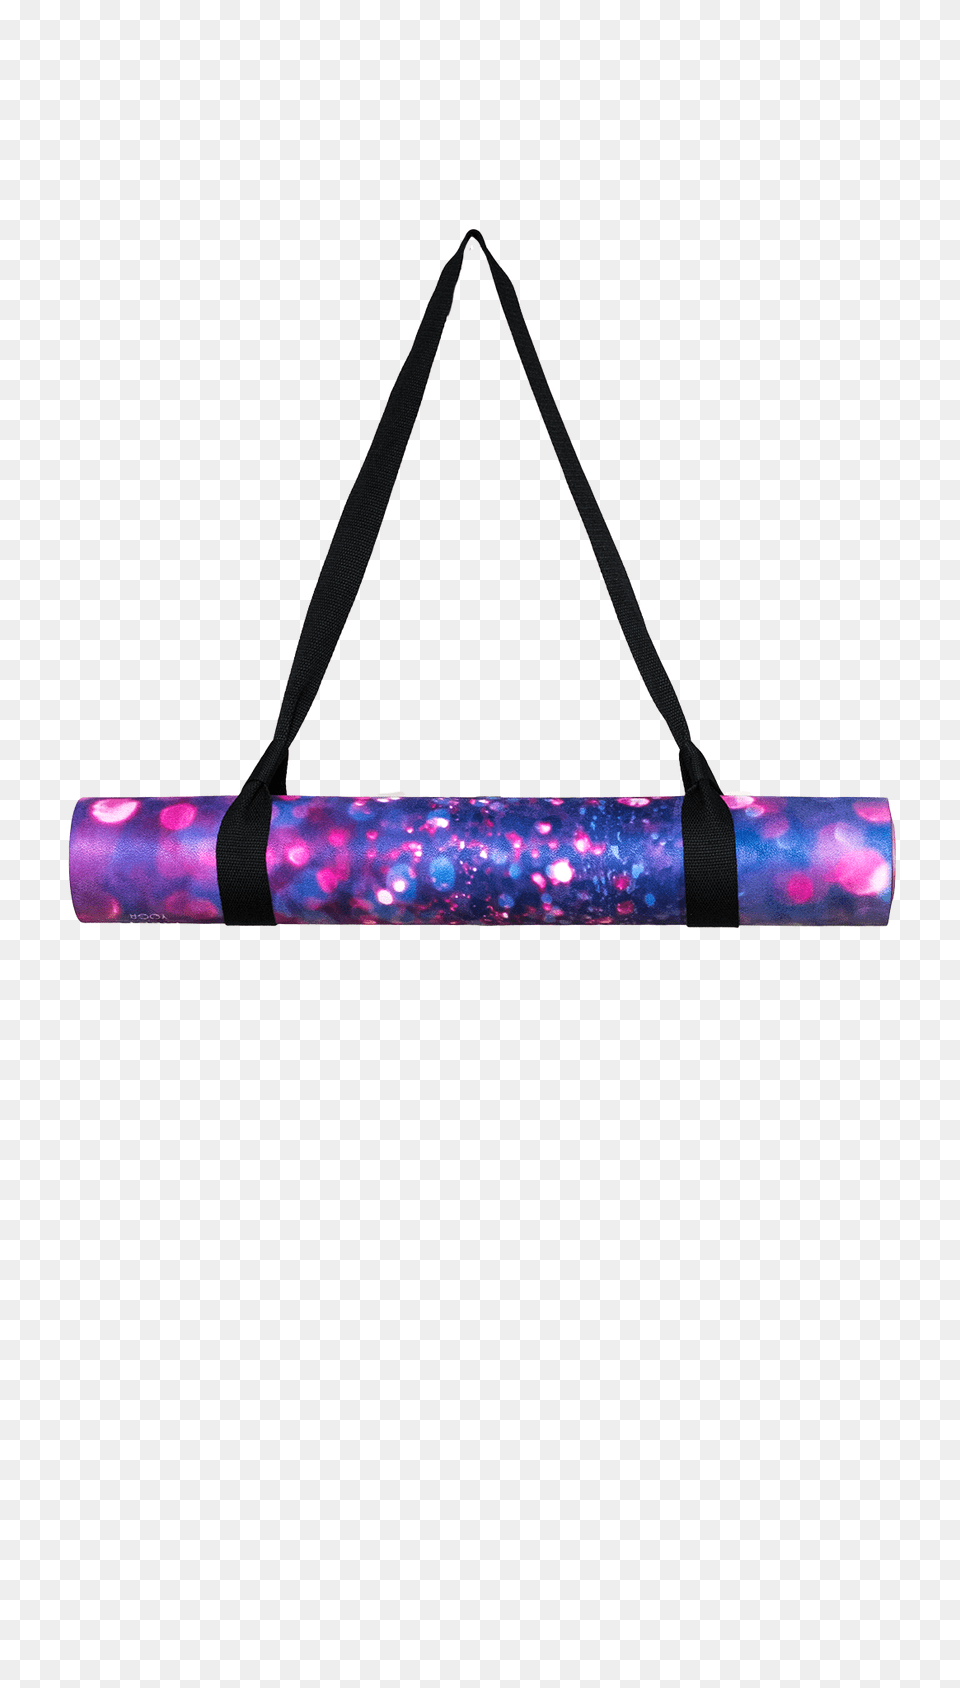 City Lights Yoga Mat, Accessories, Bag, Handbag Png Image